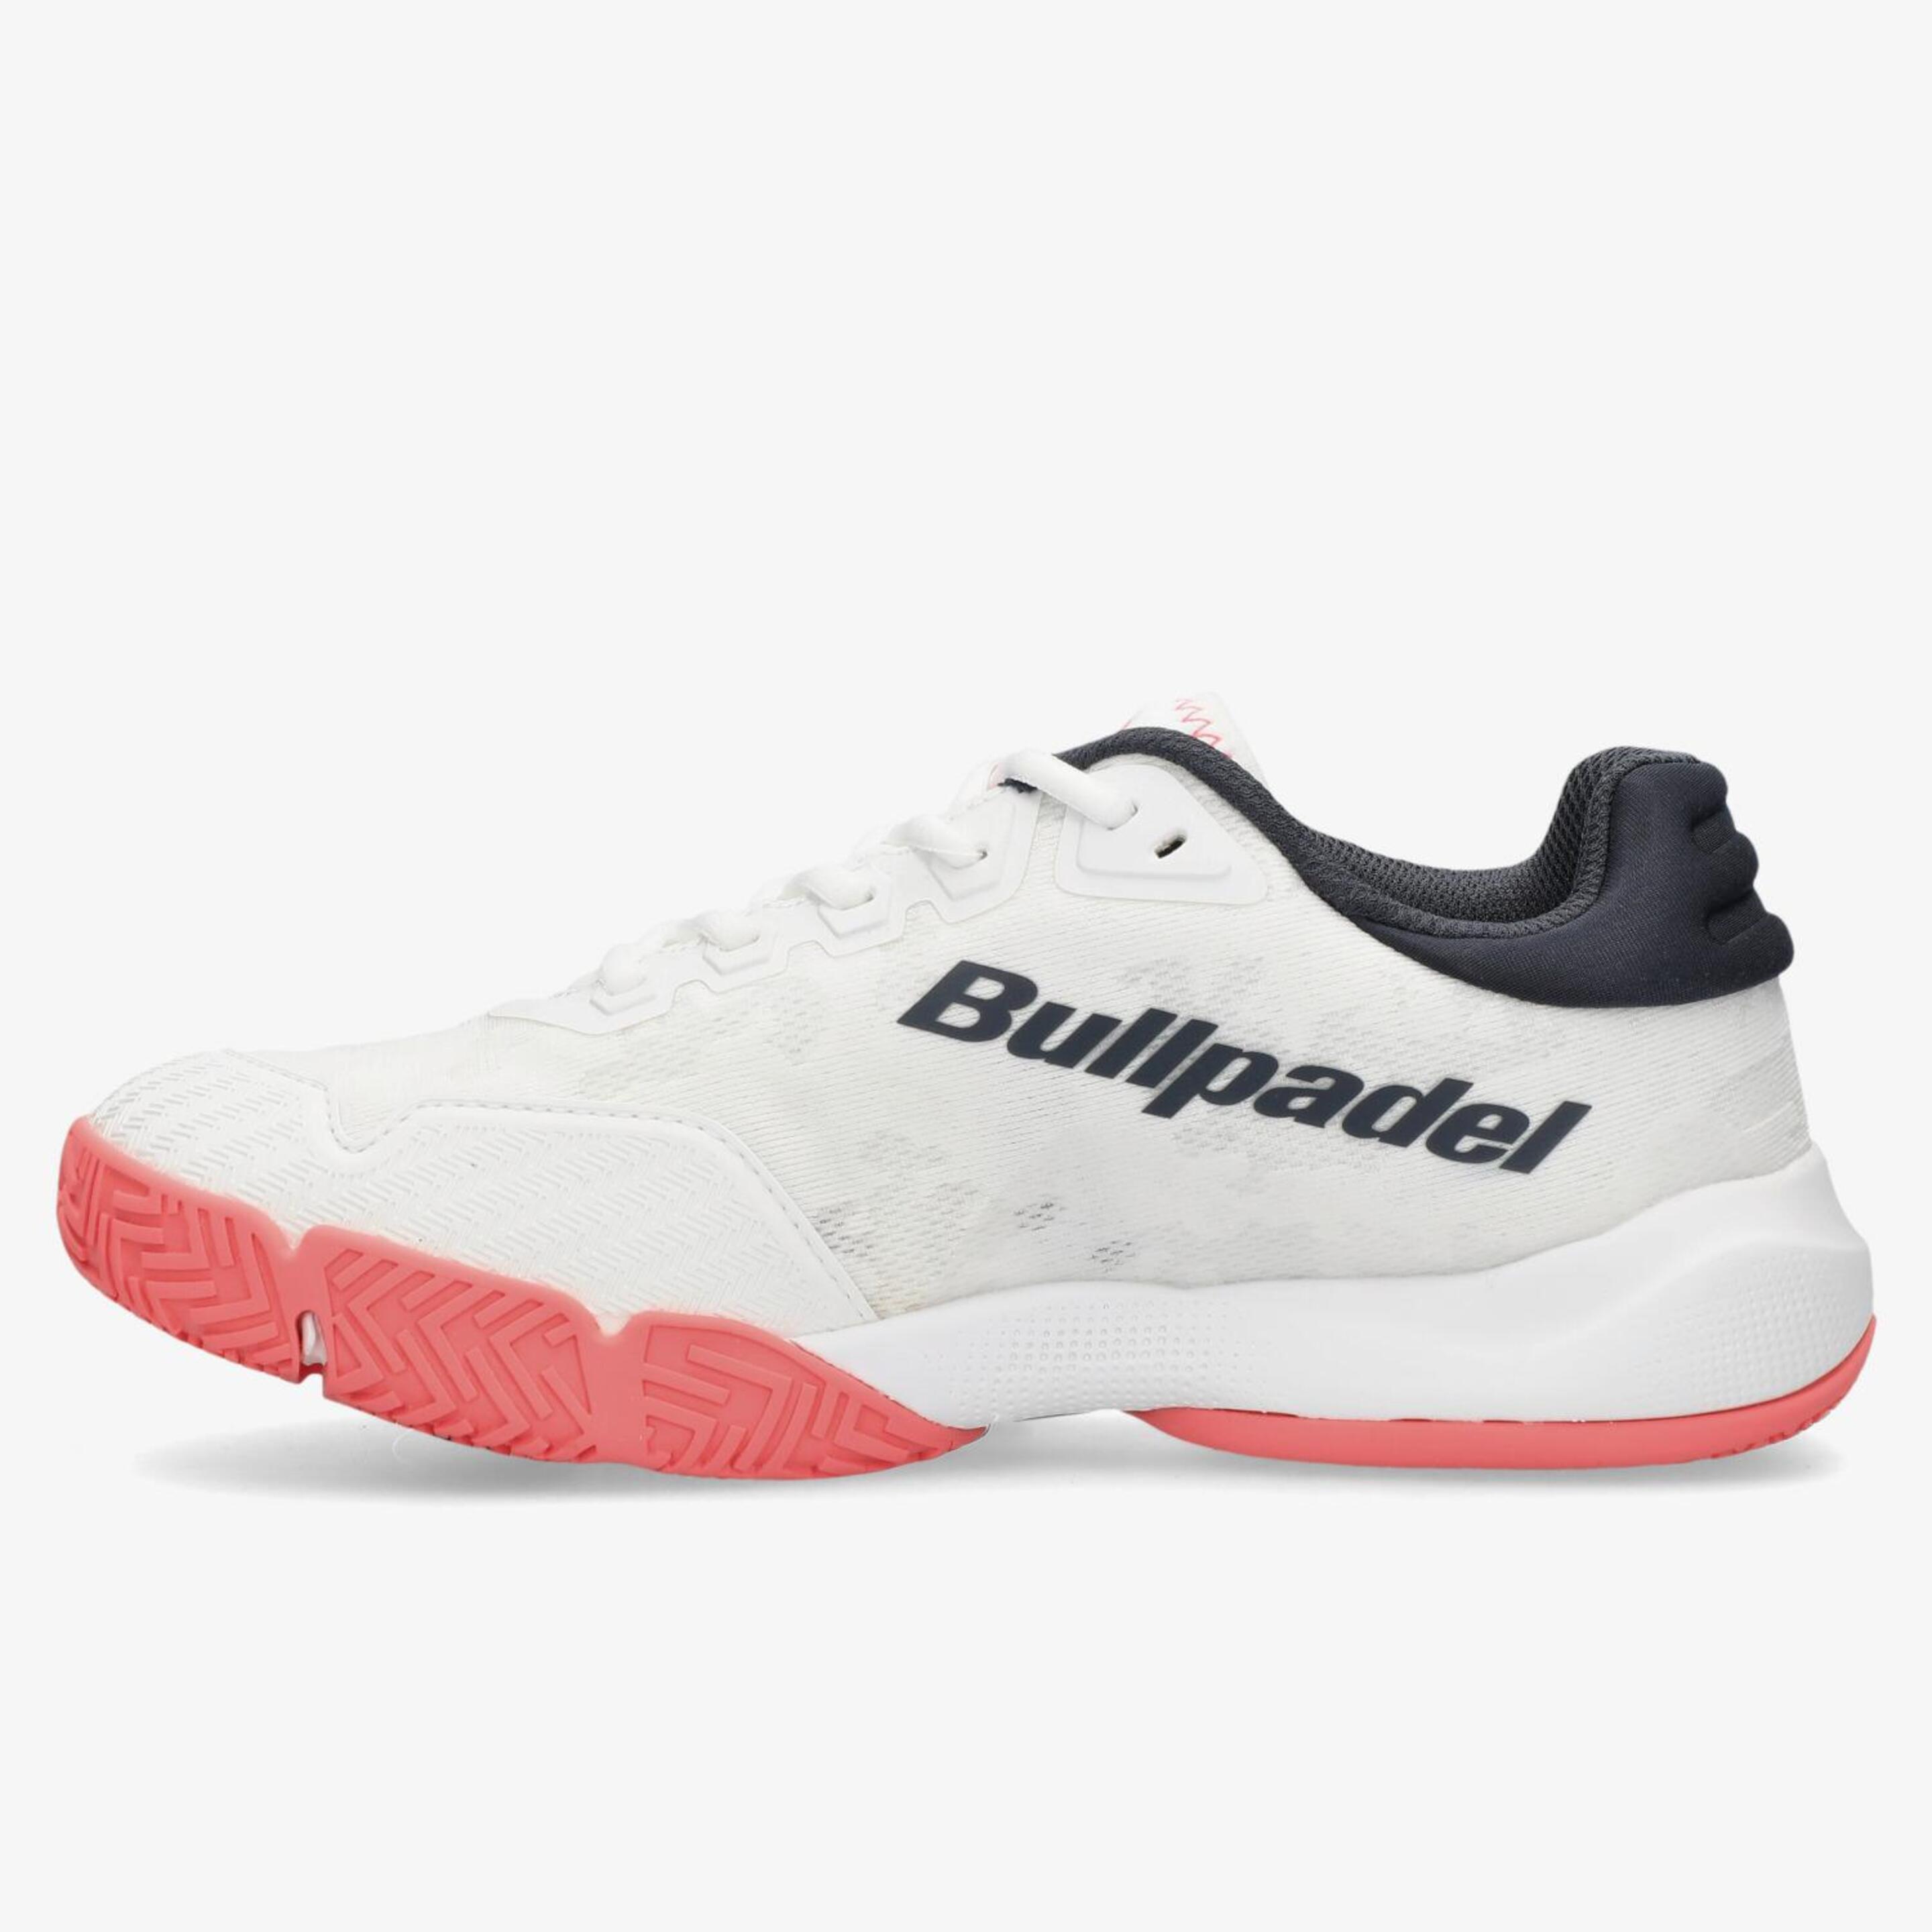 Bullpadel Flow - Blanco - Zapatillas Pádel Mujer  | Sprinter